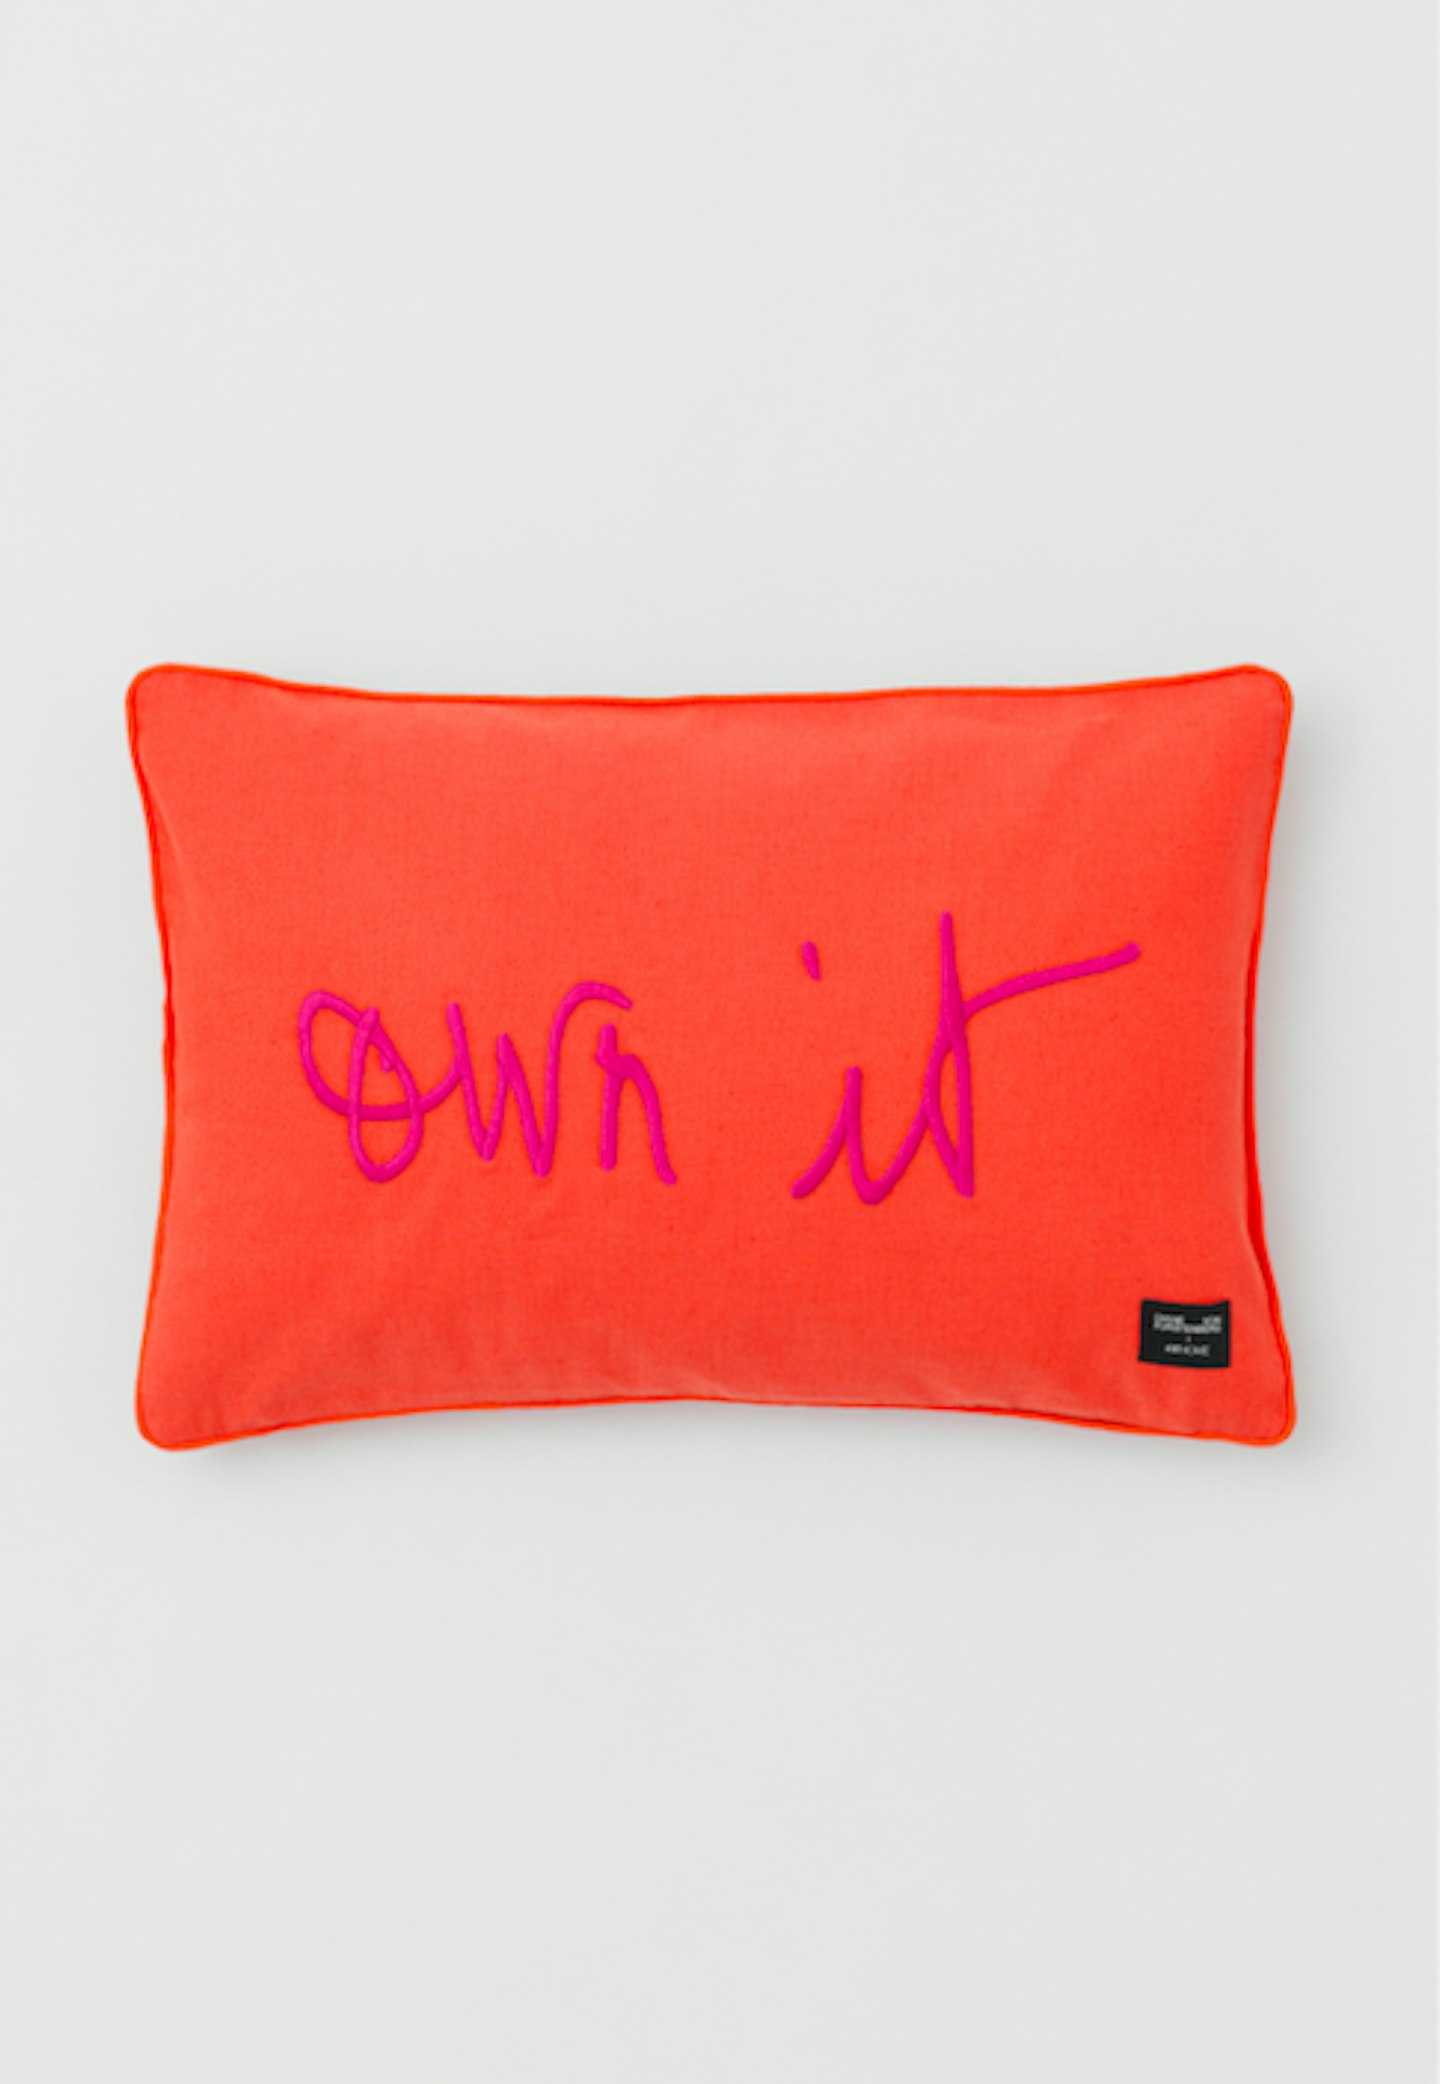 'Own It' Cushion, £39.99